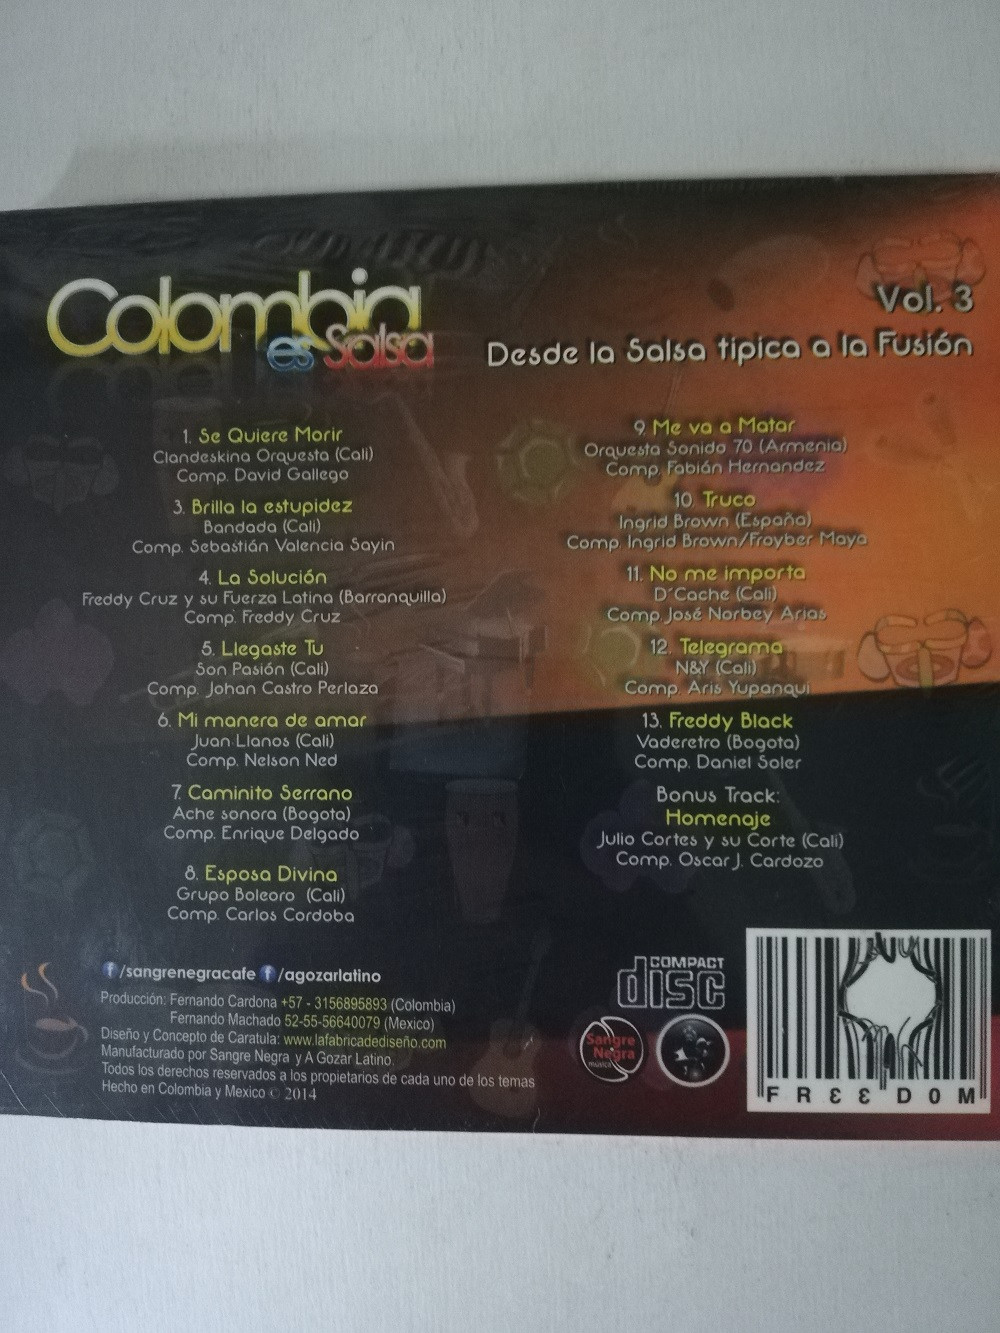 Imagen CD COLOMBIA ES SALSA - DESDE LA SALSA TIPICA A LA FUSIÓN VOL. 3 2